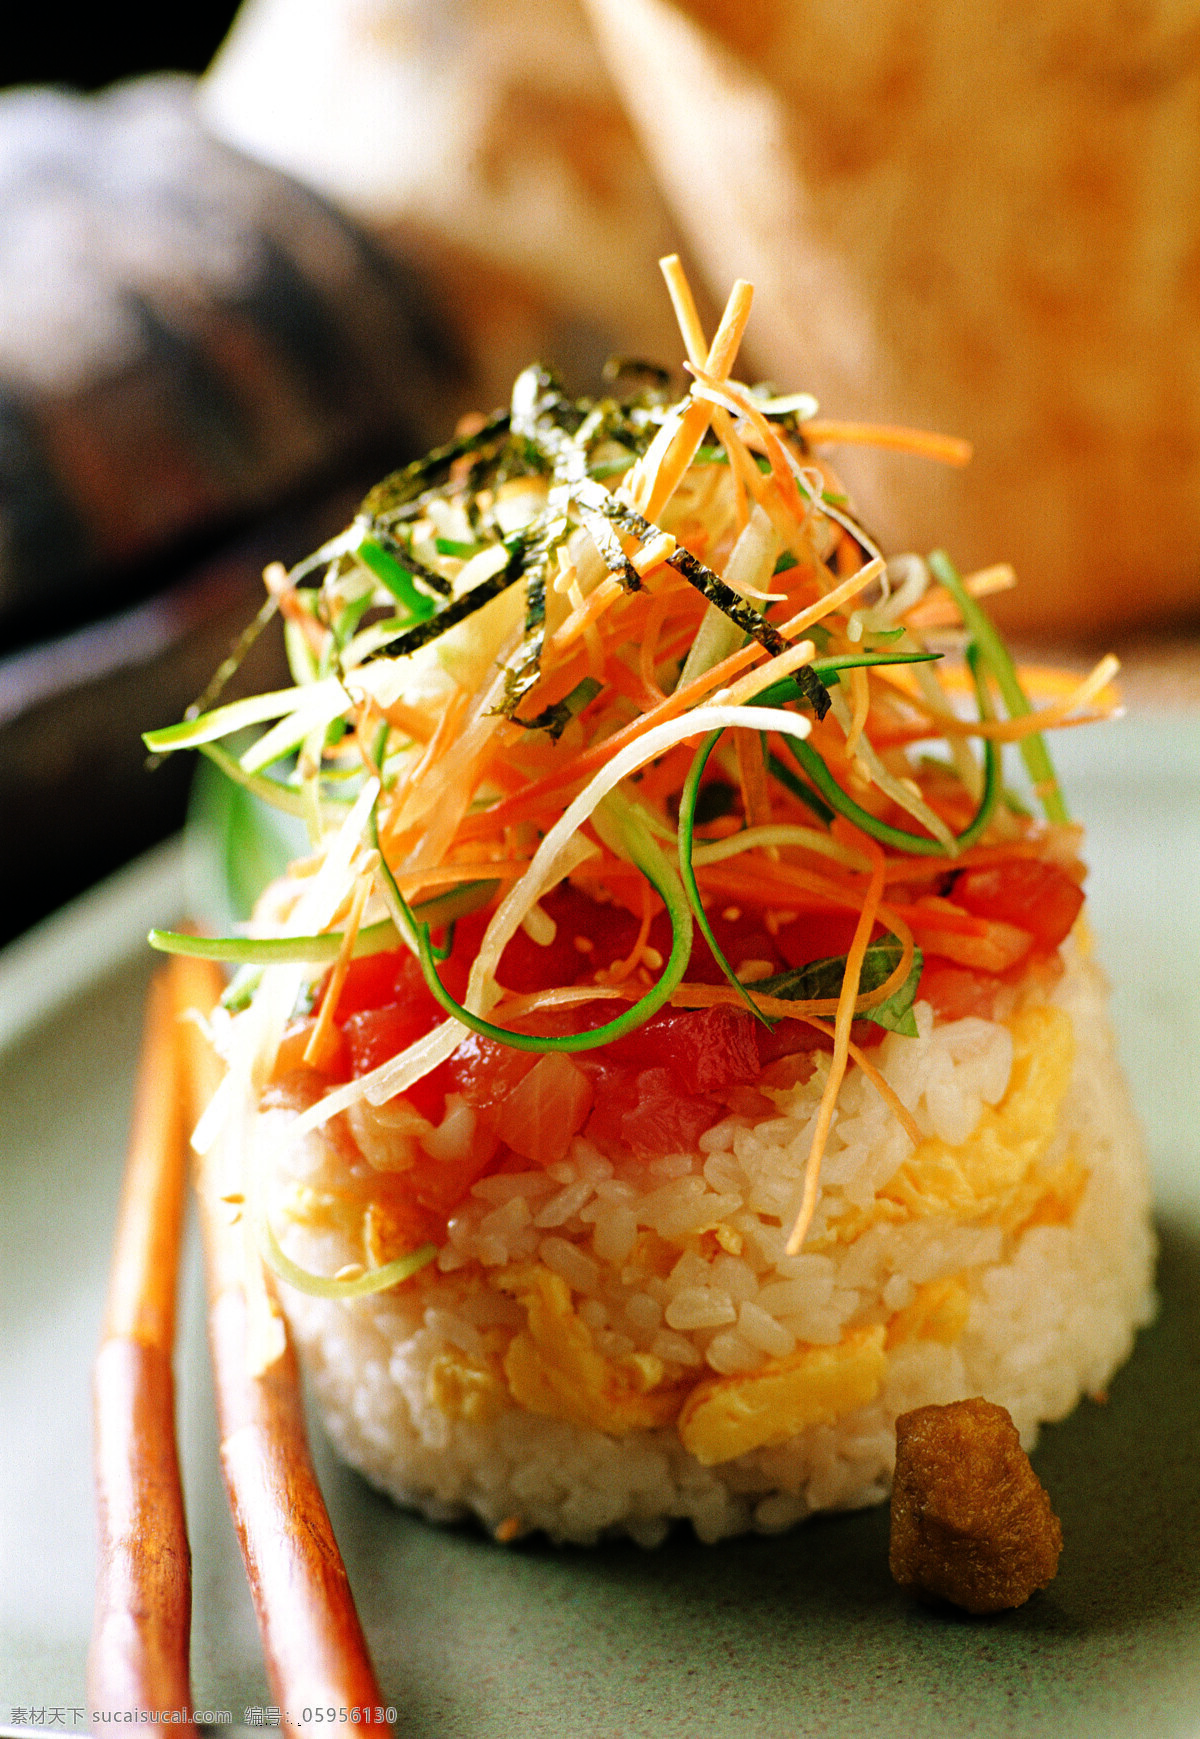 唯美 美味 美食 食物 食品 营养 健康 西餐 日本料理 日本菜 日本美食 日式美食 日式拌饭 餐饮美食 西餐美食